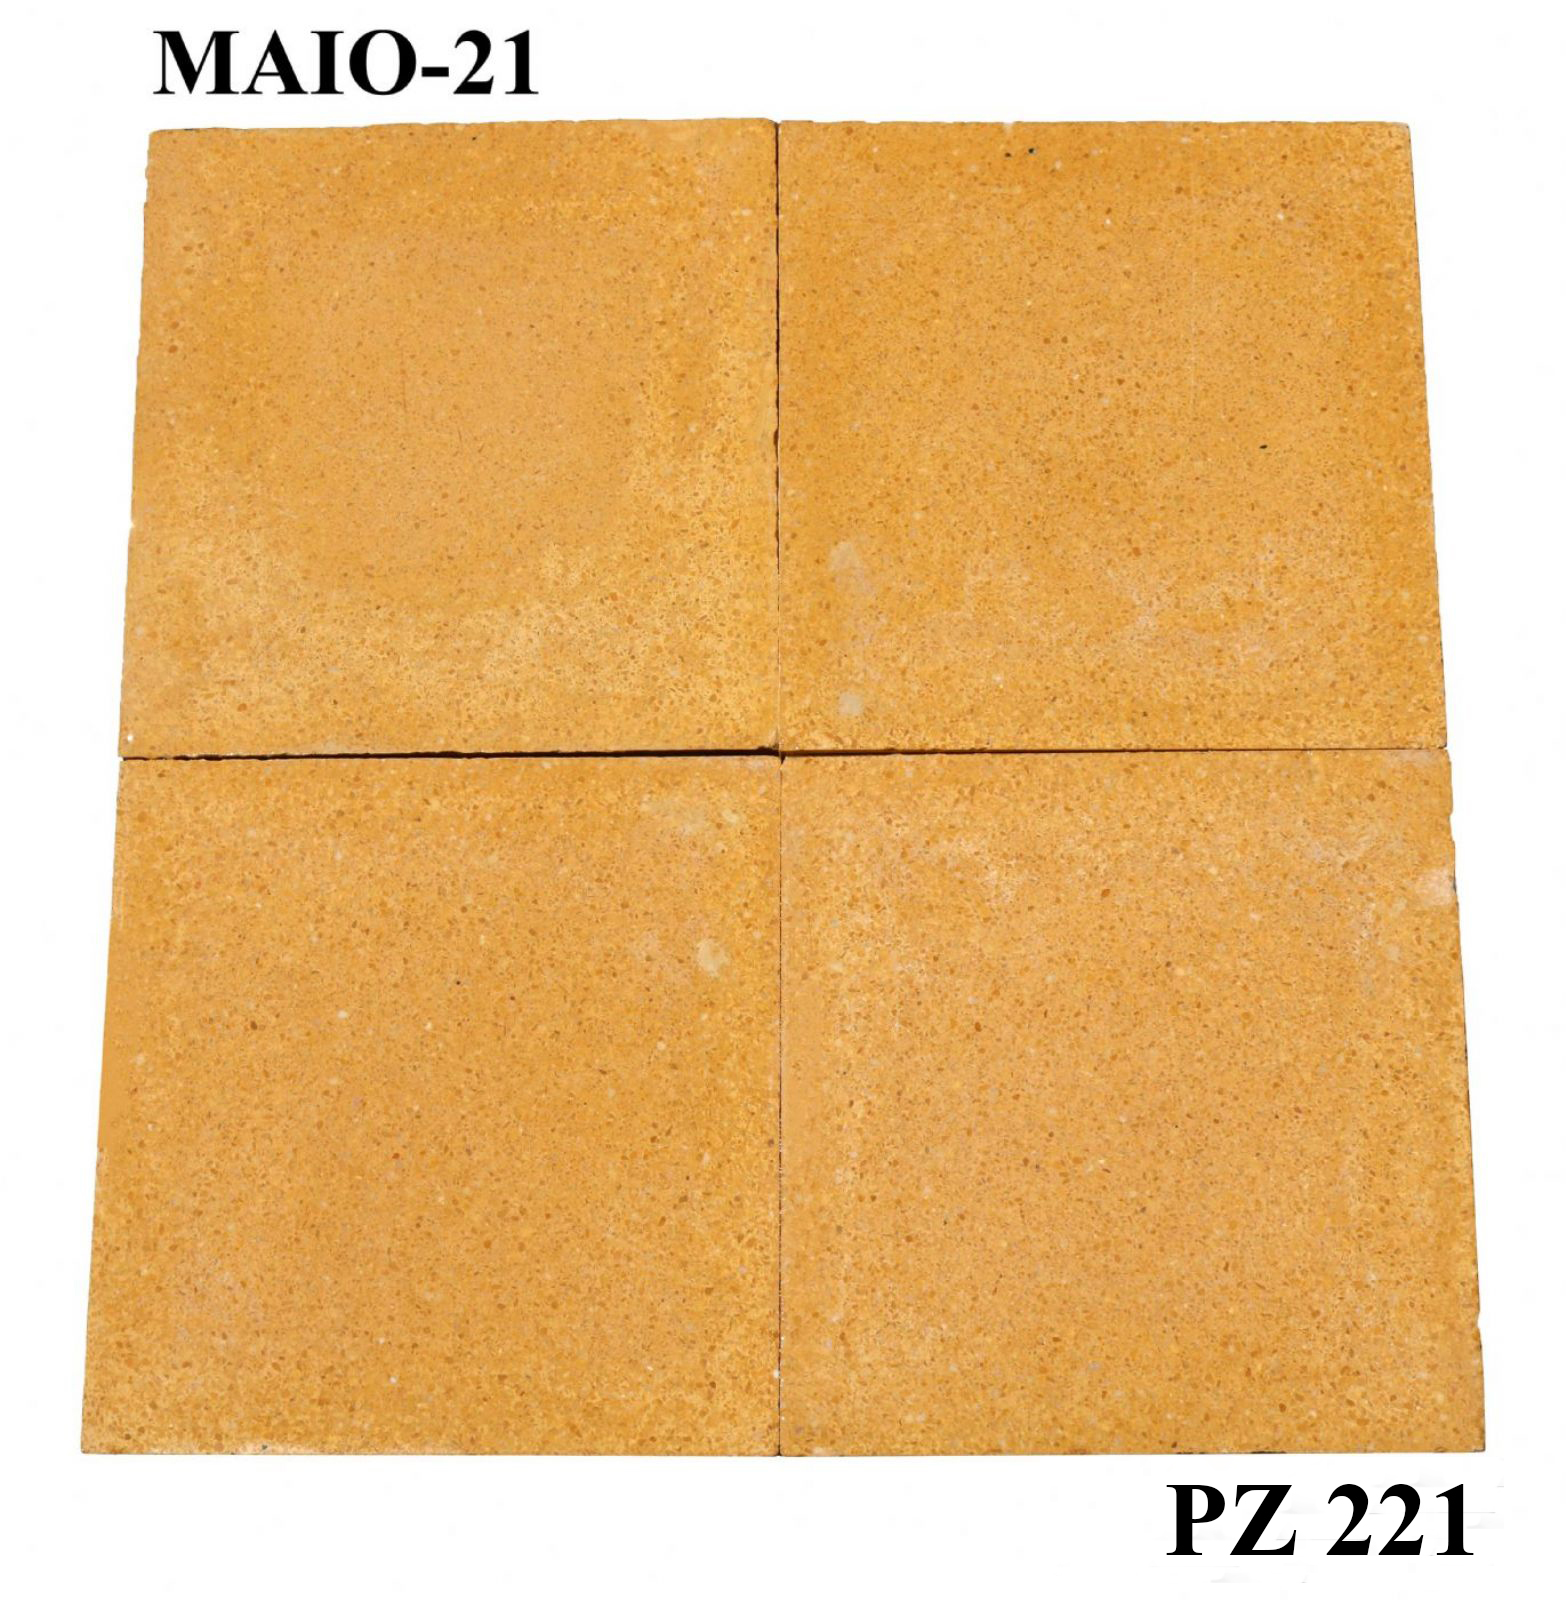 Antica pavimentazione in graniglia. cm 25x25. - Cementine e Graniglie - Pavimentazioni Antiche - Prodotti - Antichità Fiorillo